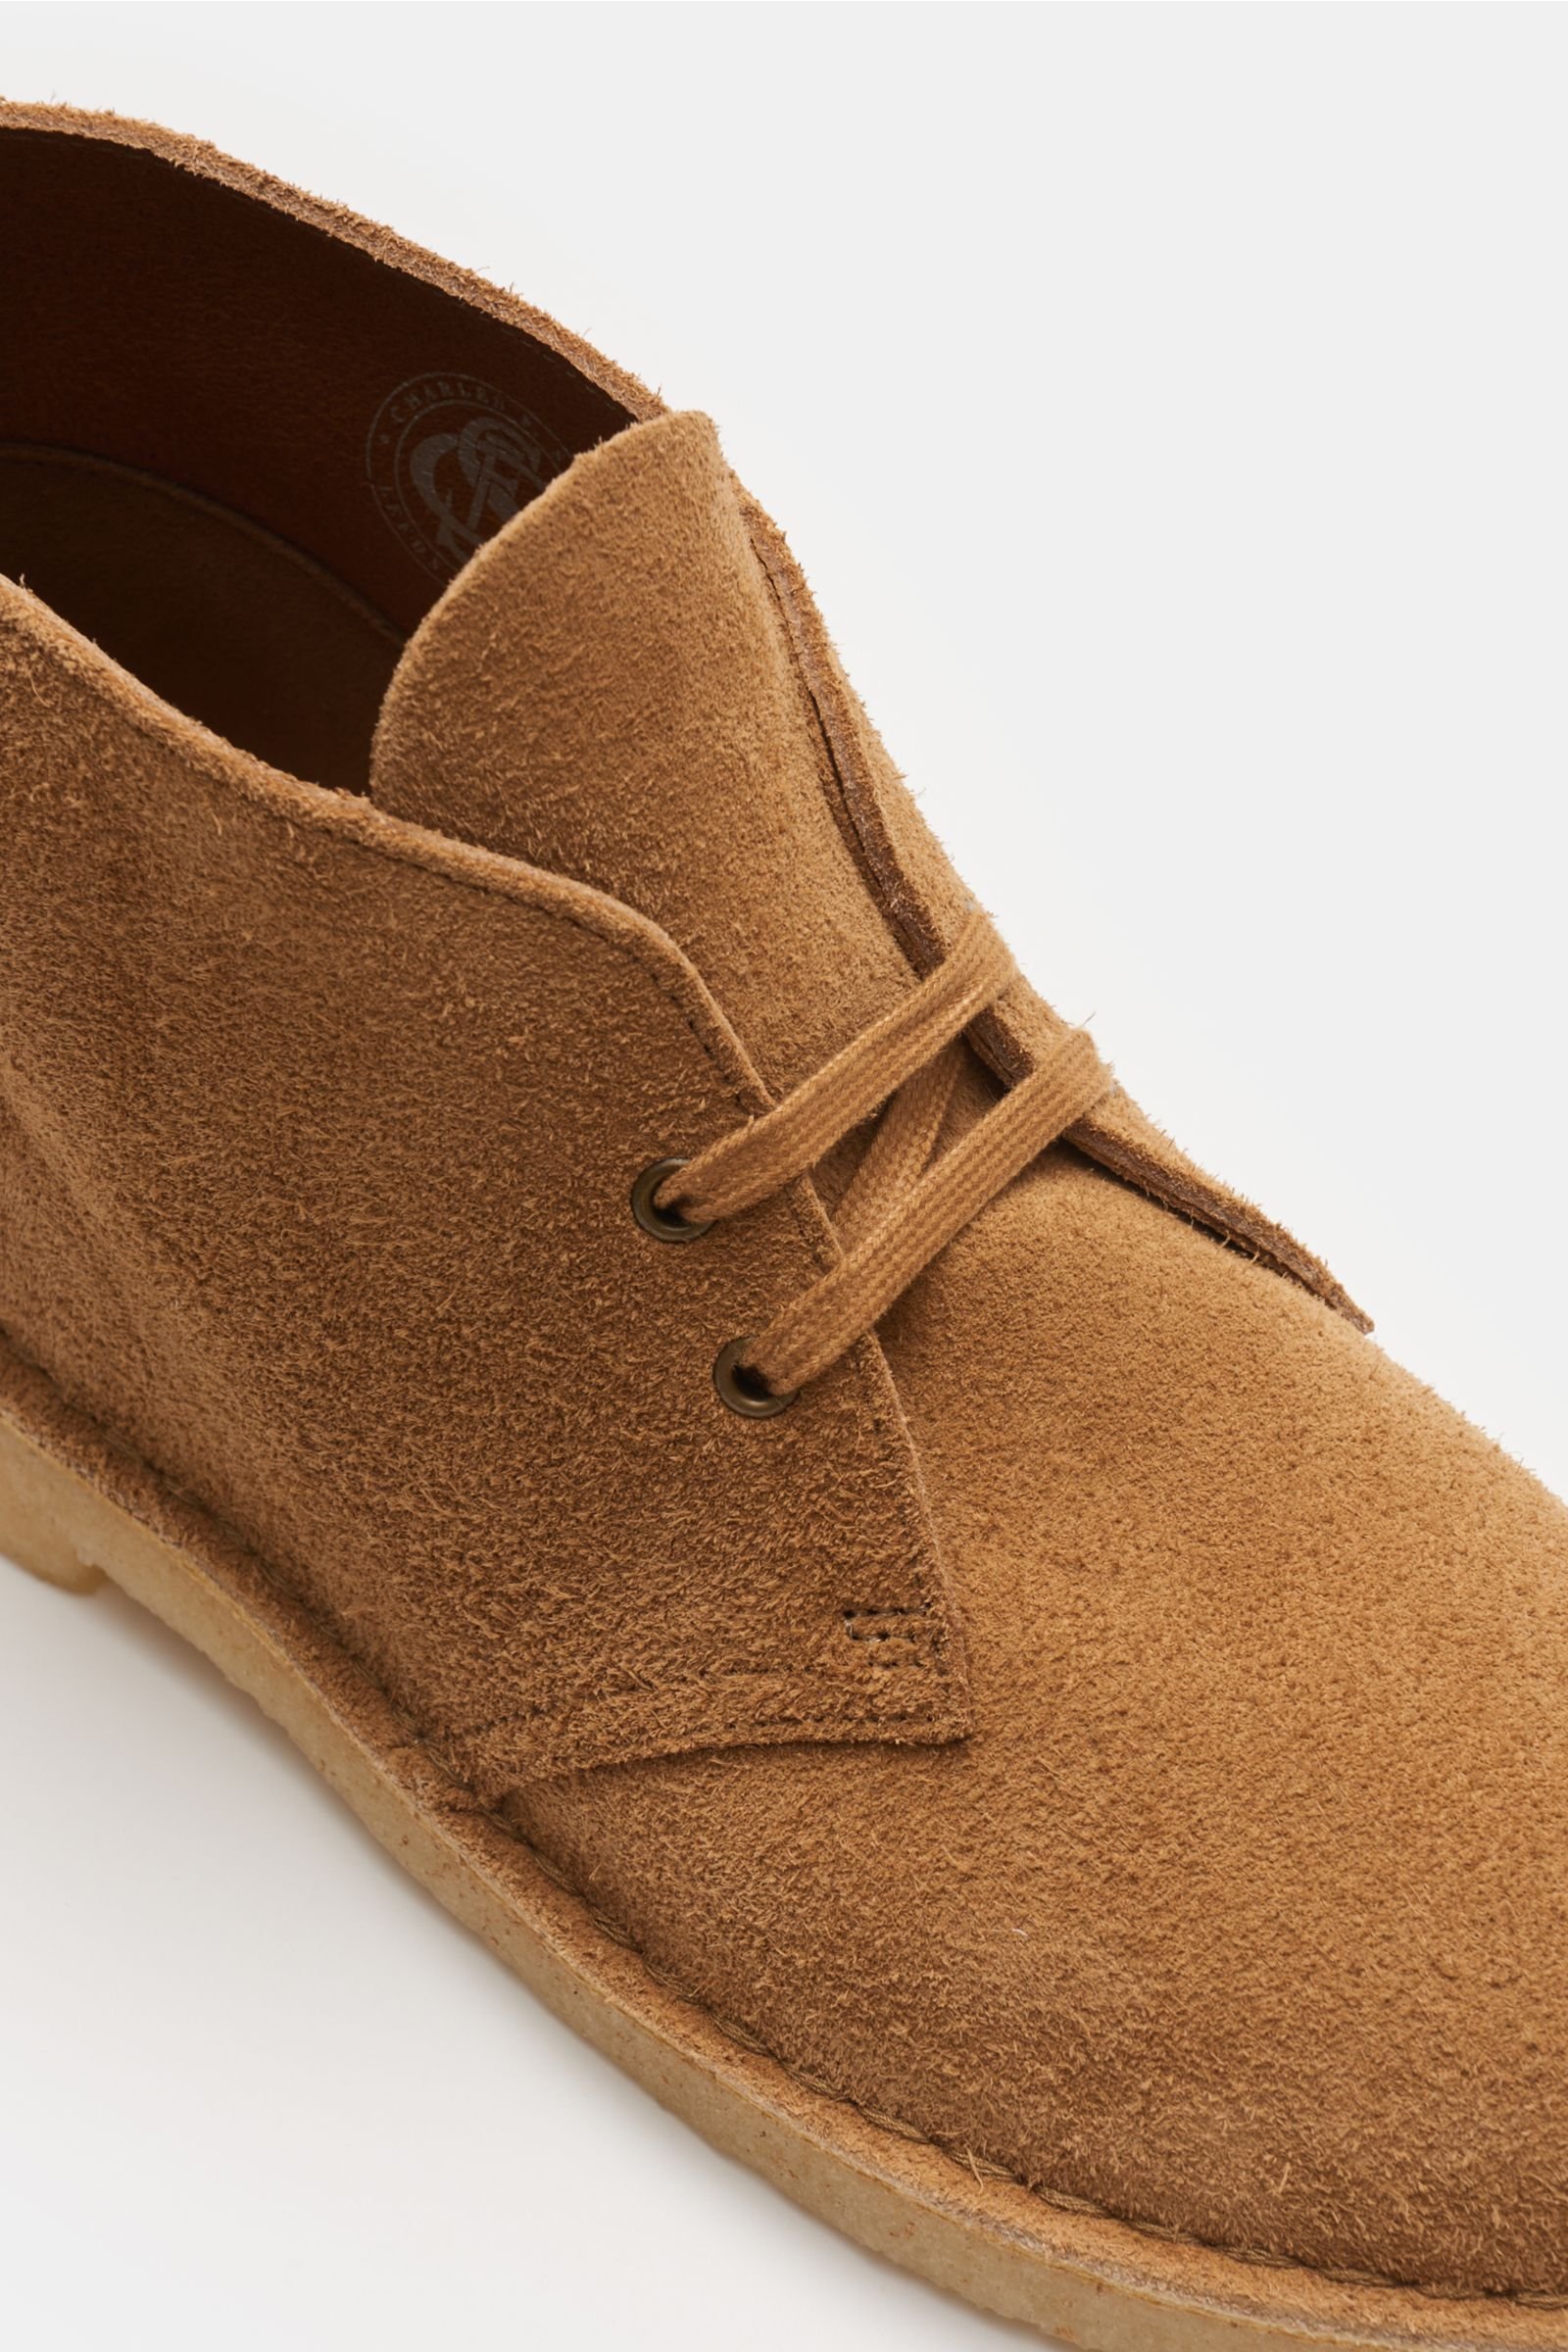 clarks originals desert boot brown